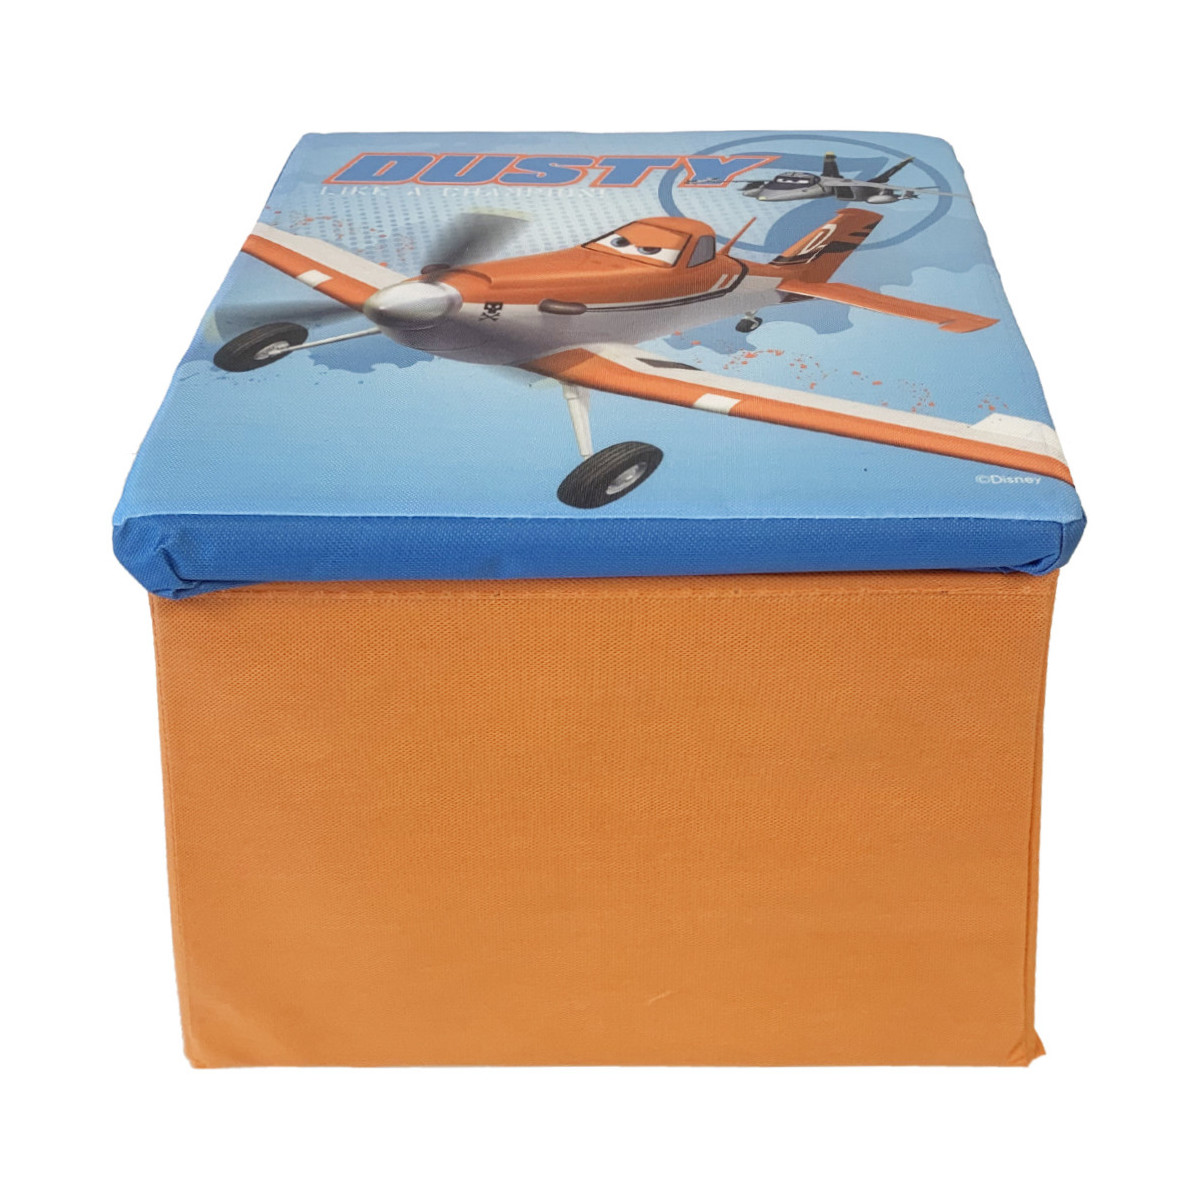 Maison & Déco Enfant Veuillez choisir votre genre Easy Licences Boite de rangement siège Planes Orange